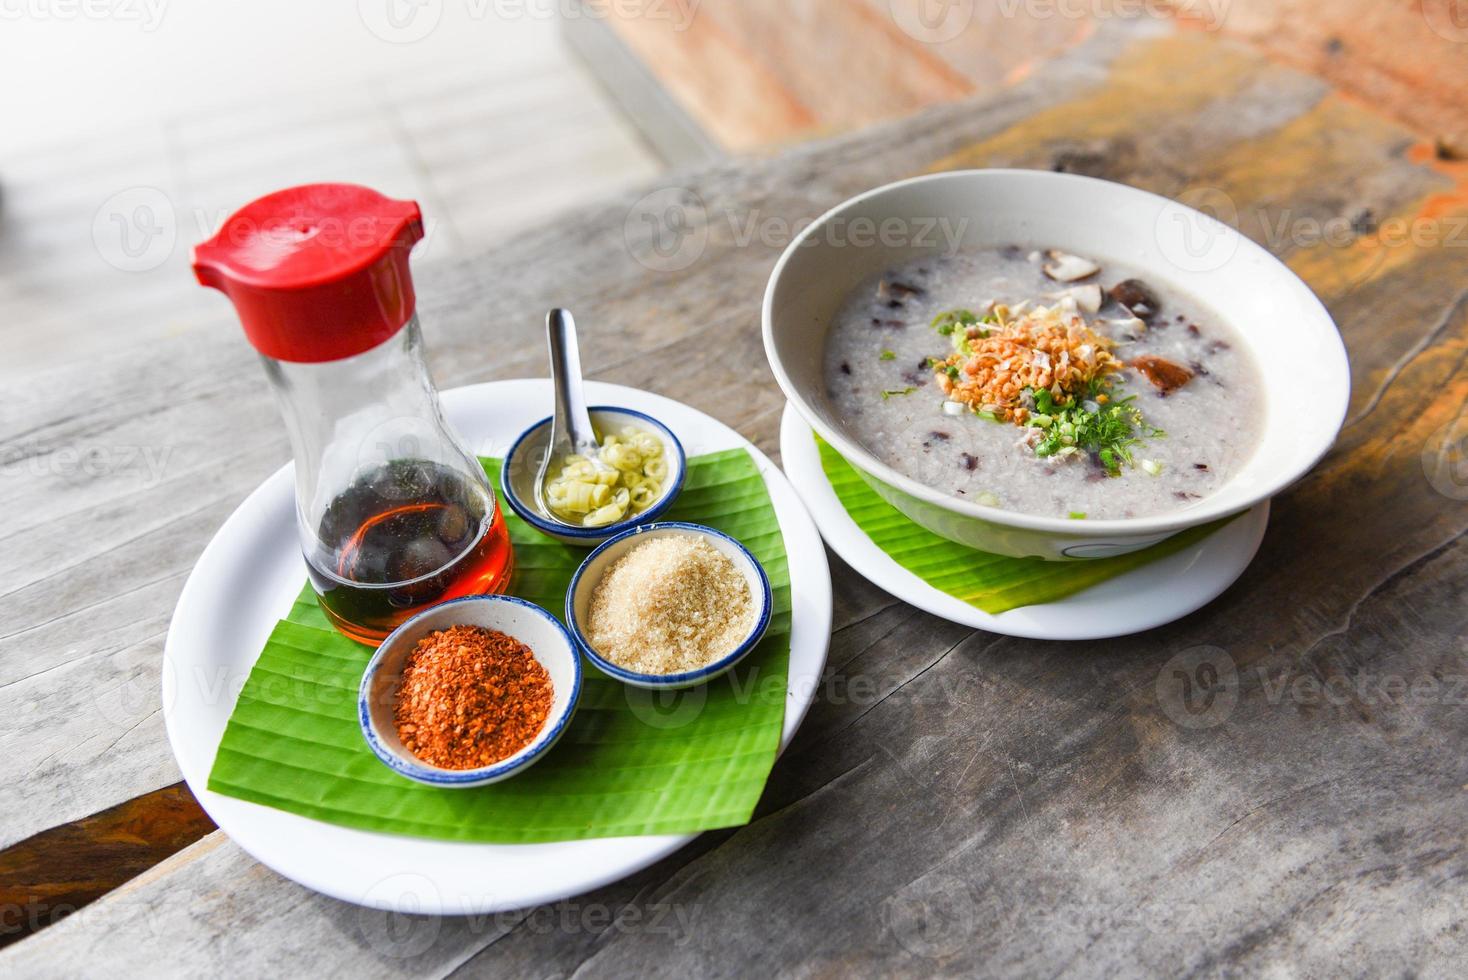 Gachas de arroz o papilla - arroz hervido con setas shiitake de cerdo y verduras con salsa de condimentos en la mesa de madera foto